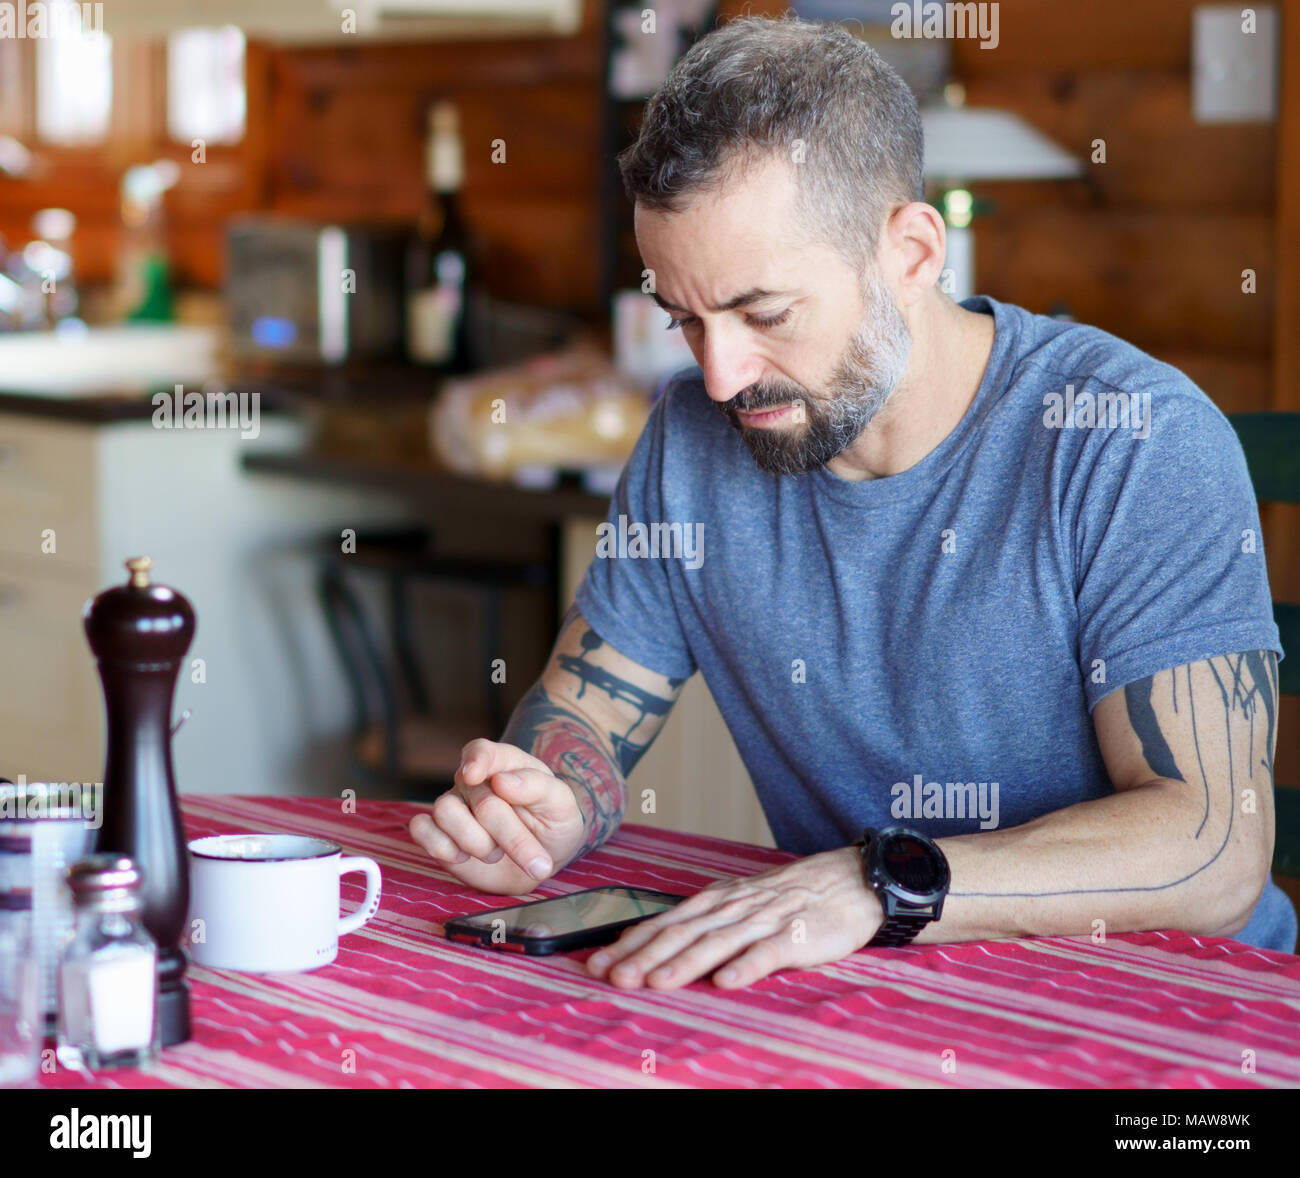 Mediados de los 30's la barba y tatuado hombre mirando su smartphone en la mesa de la cocina con un mantel rojo y llevaba una camiseta azul y un gran reloj. Foto de stock